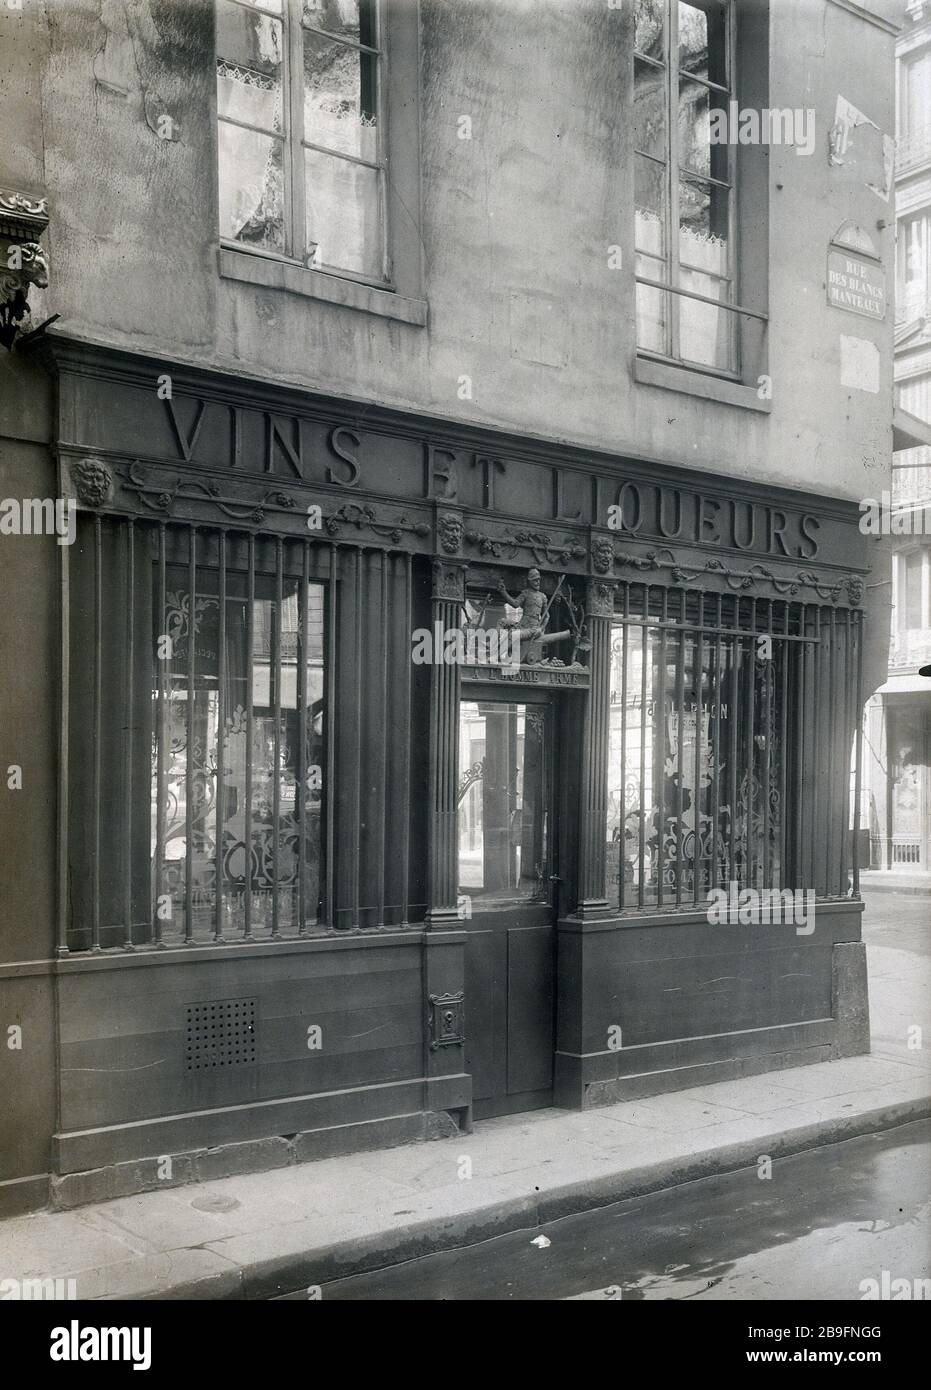 STREET WHITE-COATS Rue des Blancs-Manteaux, angle rue des Archives, boutique à l'Homme Armé. Paris (IVème arr.). Photographie de Charles Lansiaux (1855-1939). Paris, musée Carnavalet. Stock Photo